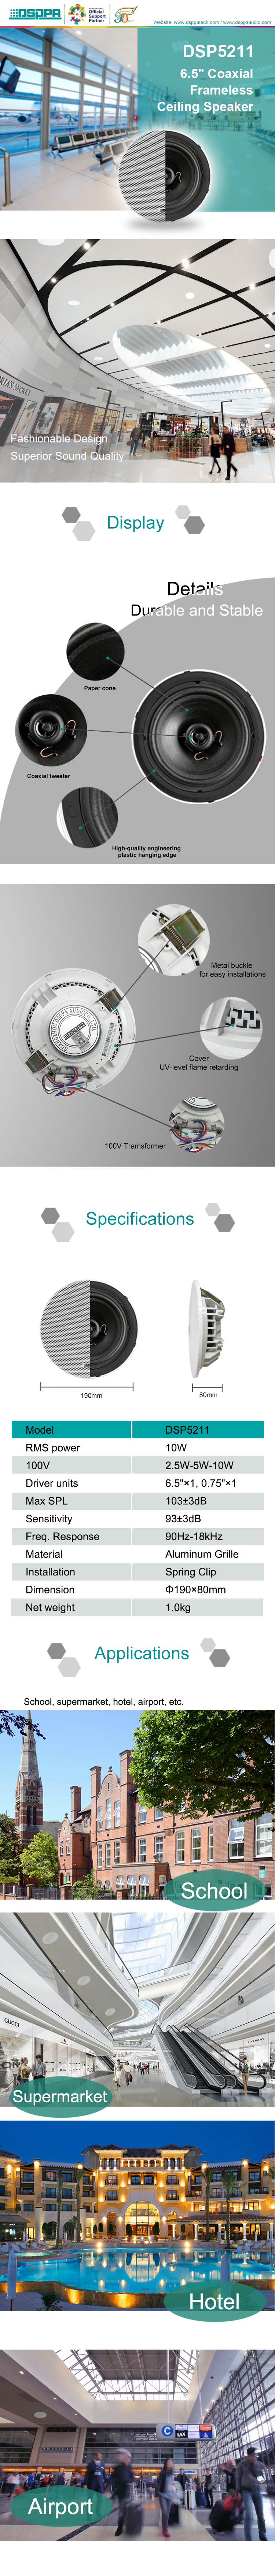 DSP5211 10W 6.5'' Coaxial Frameless Ceiling Speaker